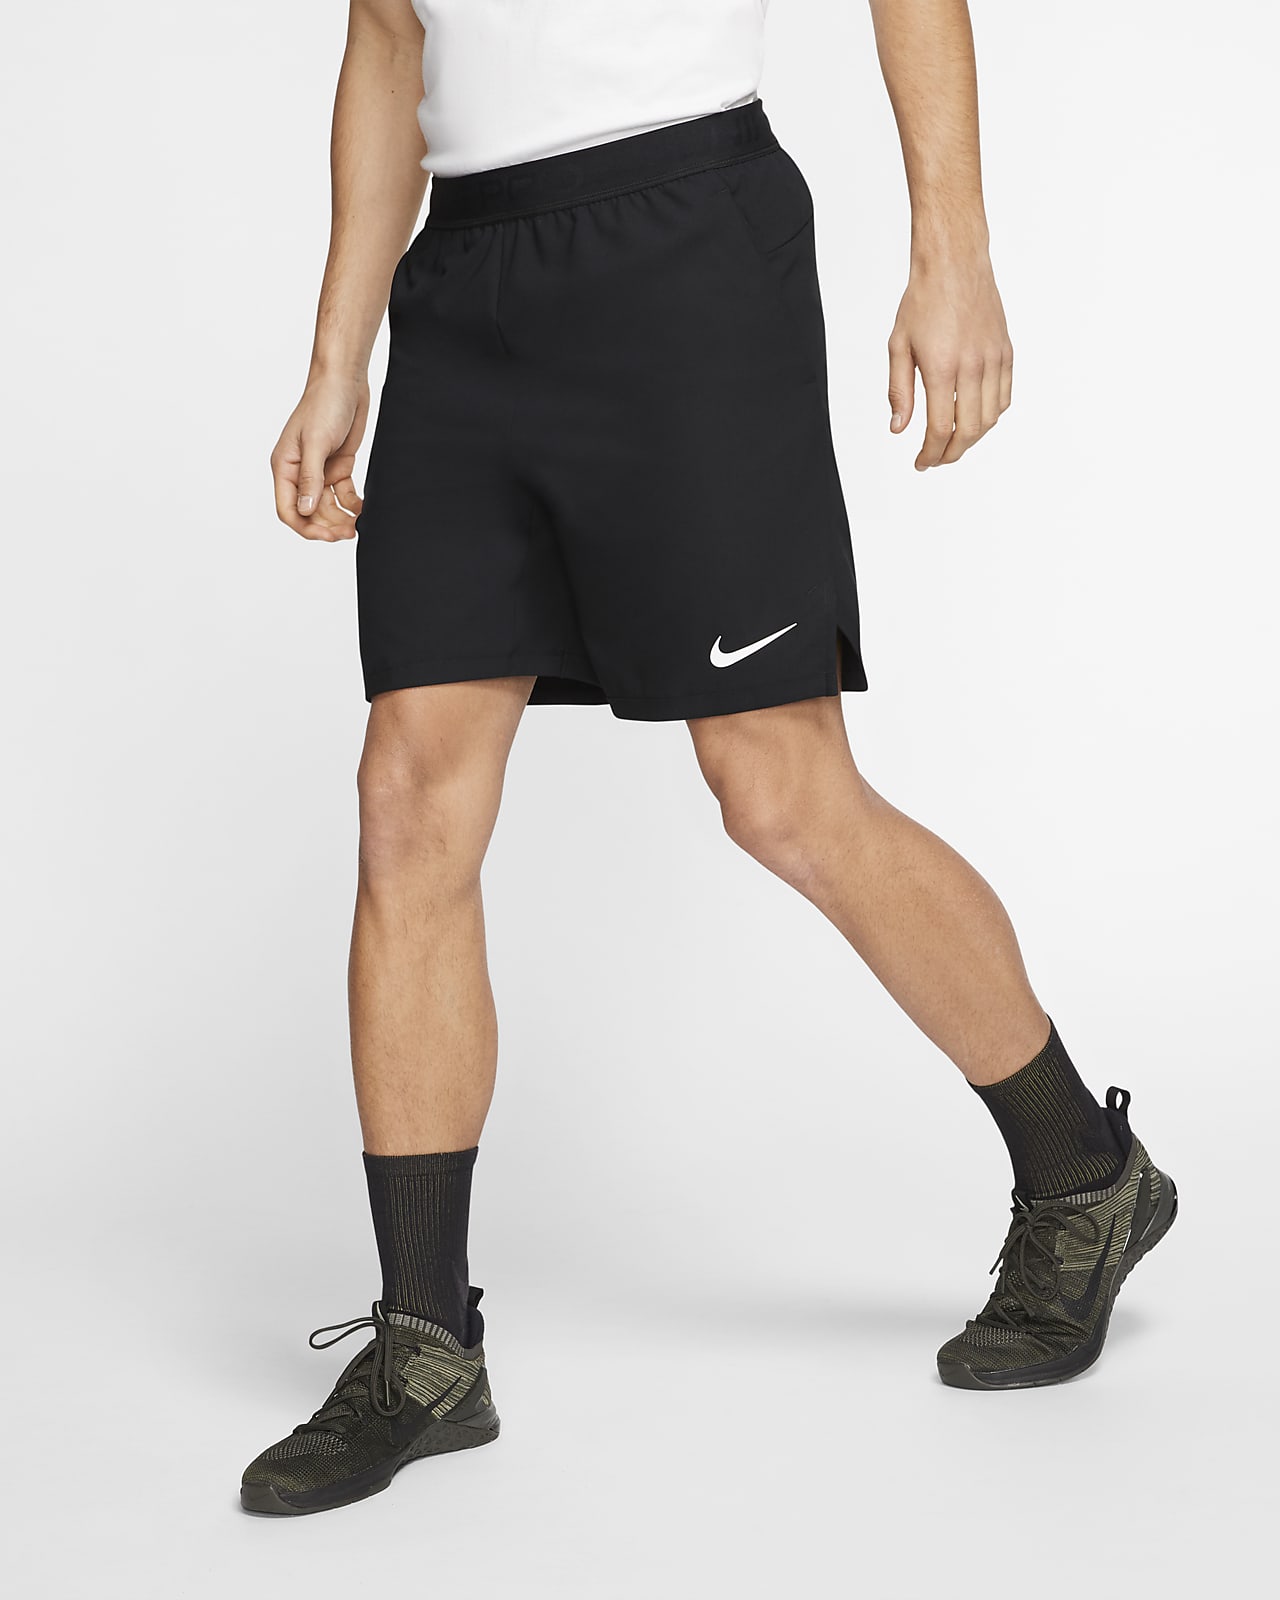 Nike Pro Flex Men's Shorts. Nike SG